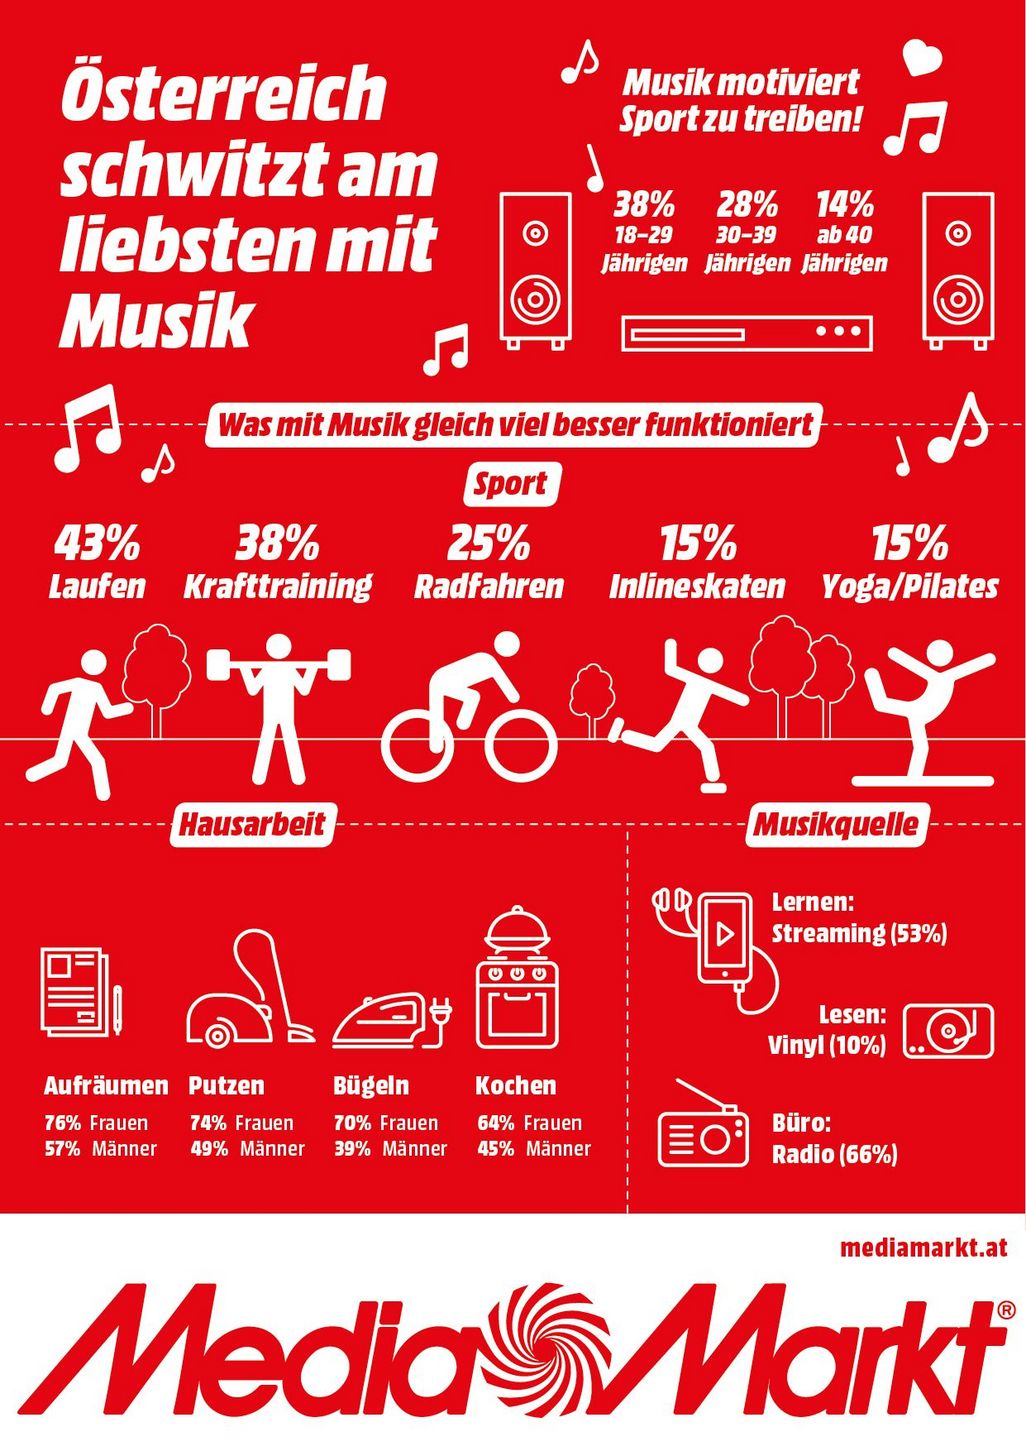  MediaMarkt Lifestyle-Studie belegt: Österreicher sporteln am liebsten mit Musik.